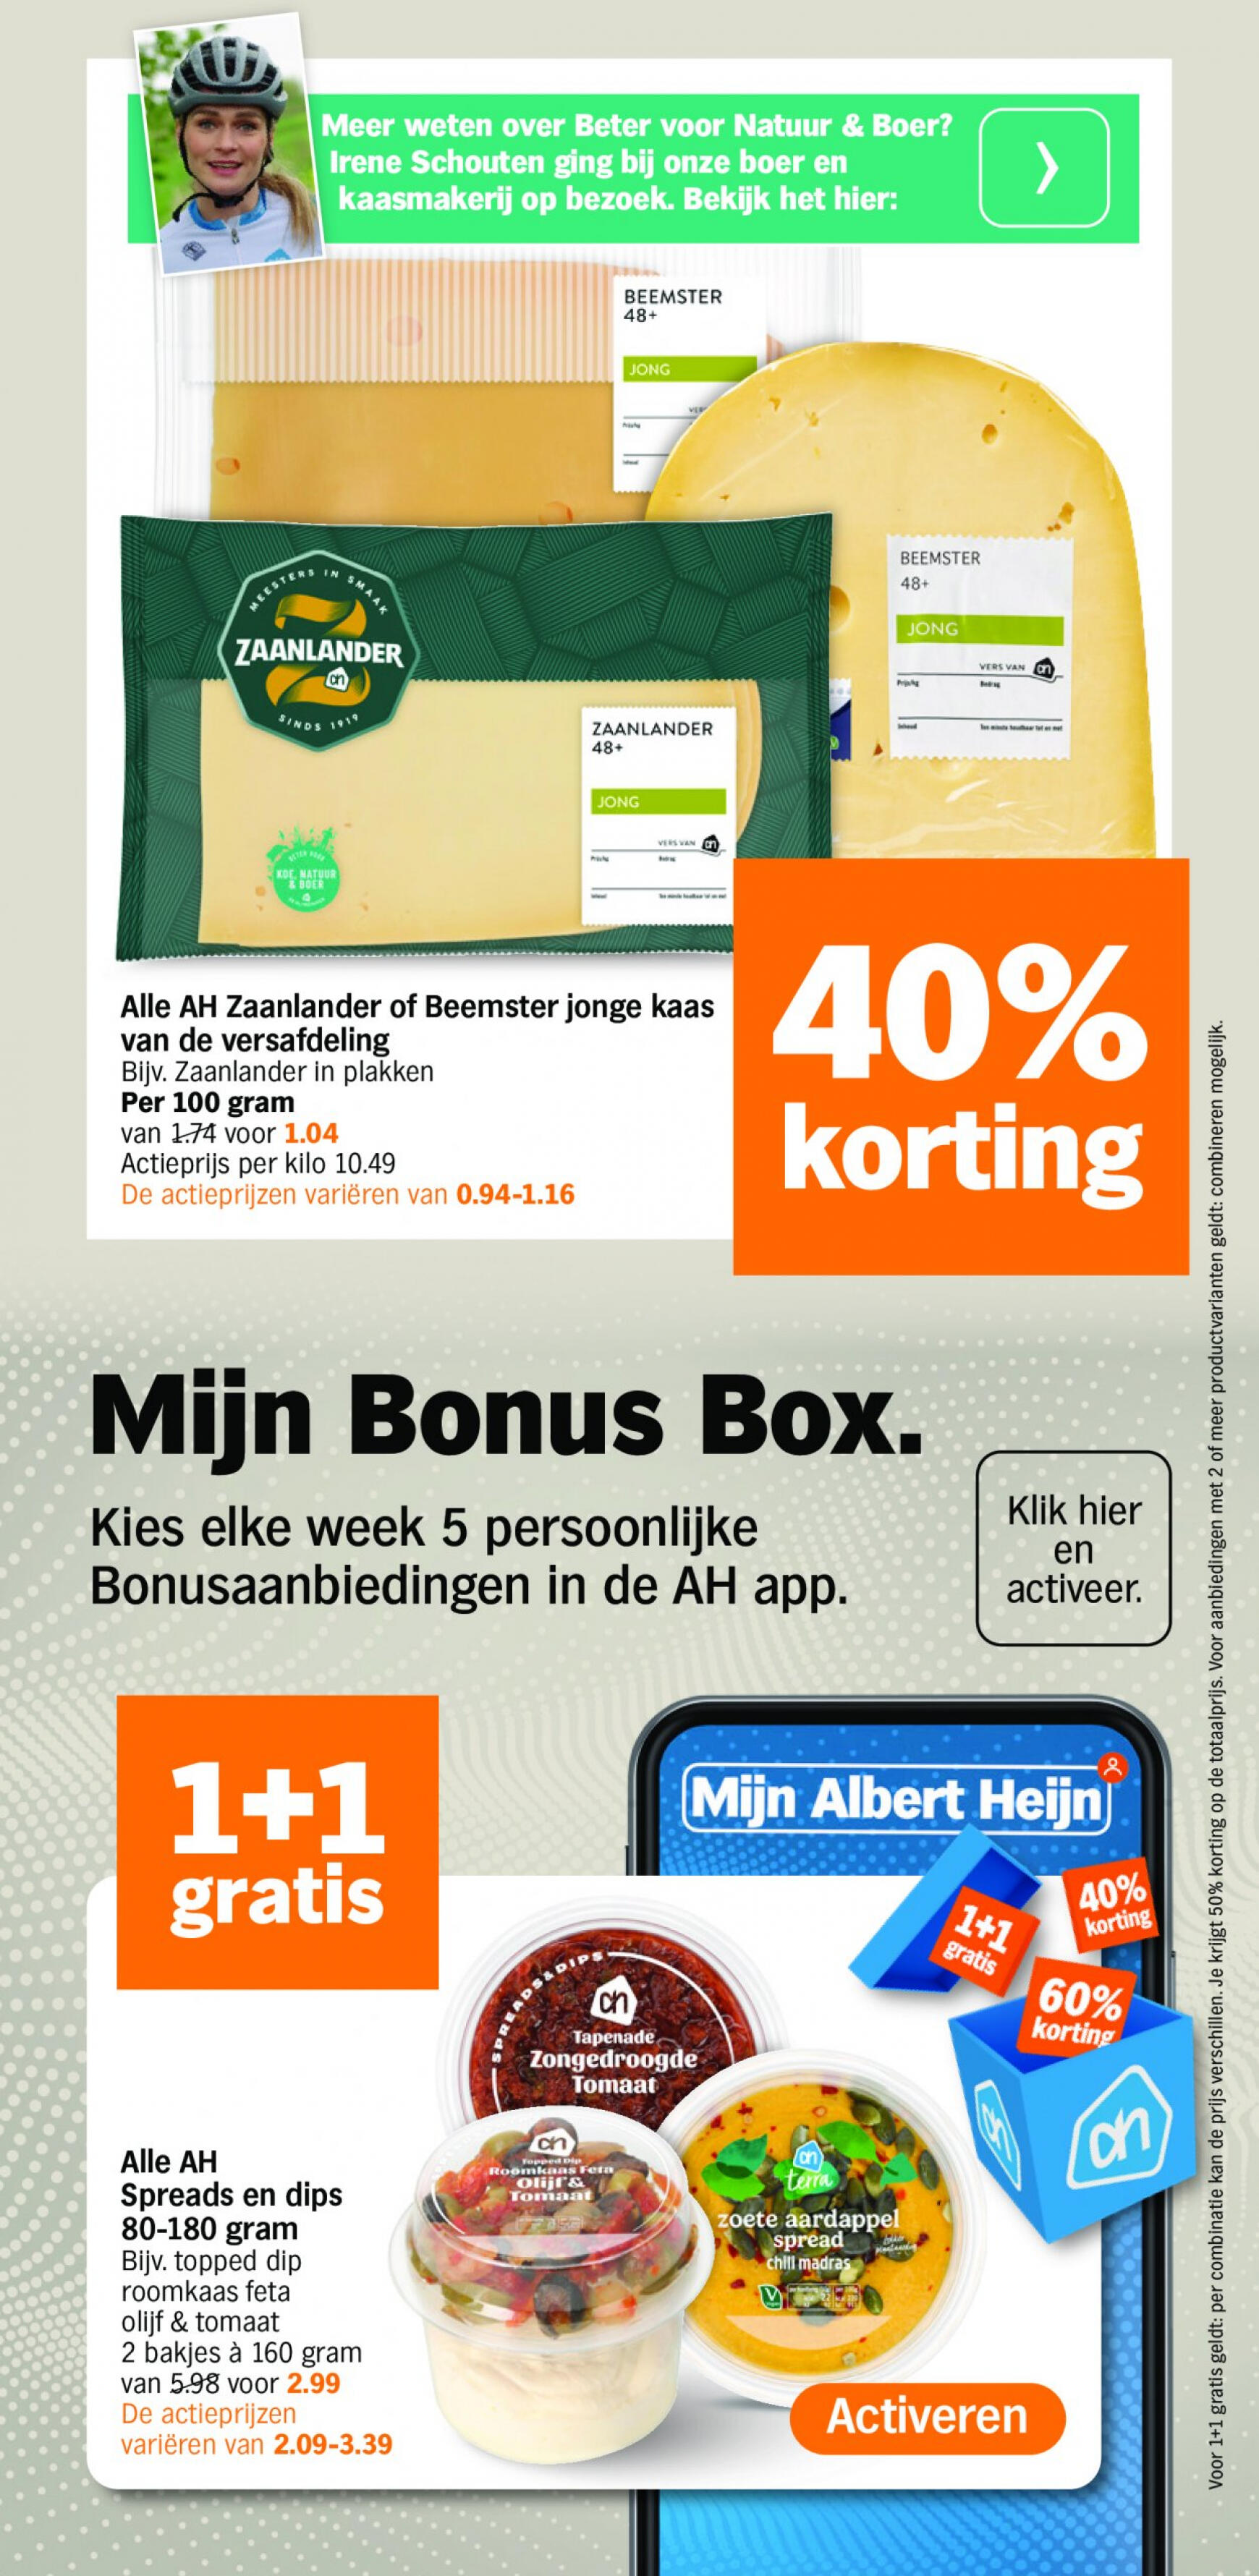 albert-heijn - Albert Heijn folder huidig 21.05. - 26.05. - page: 14